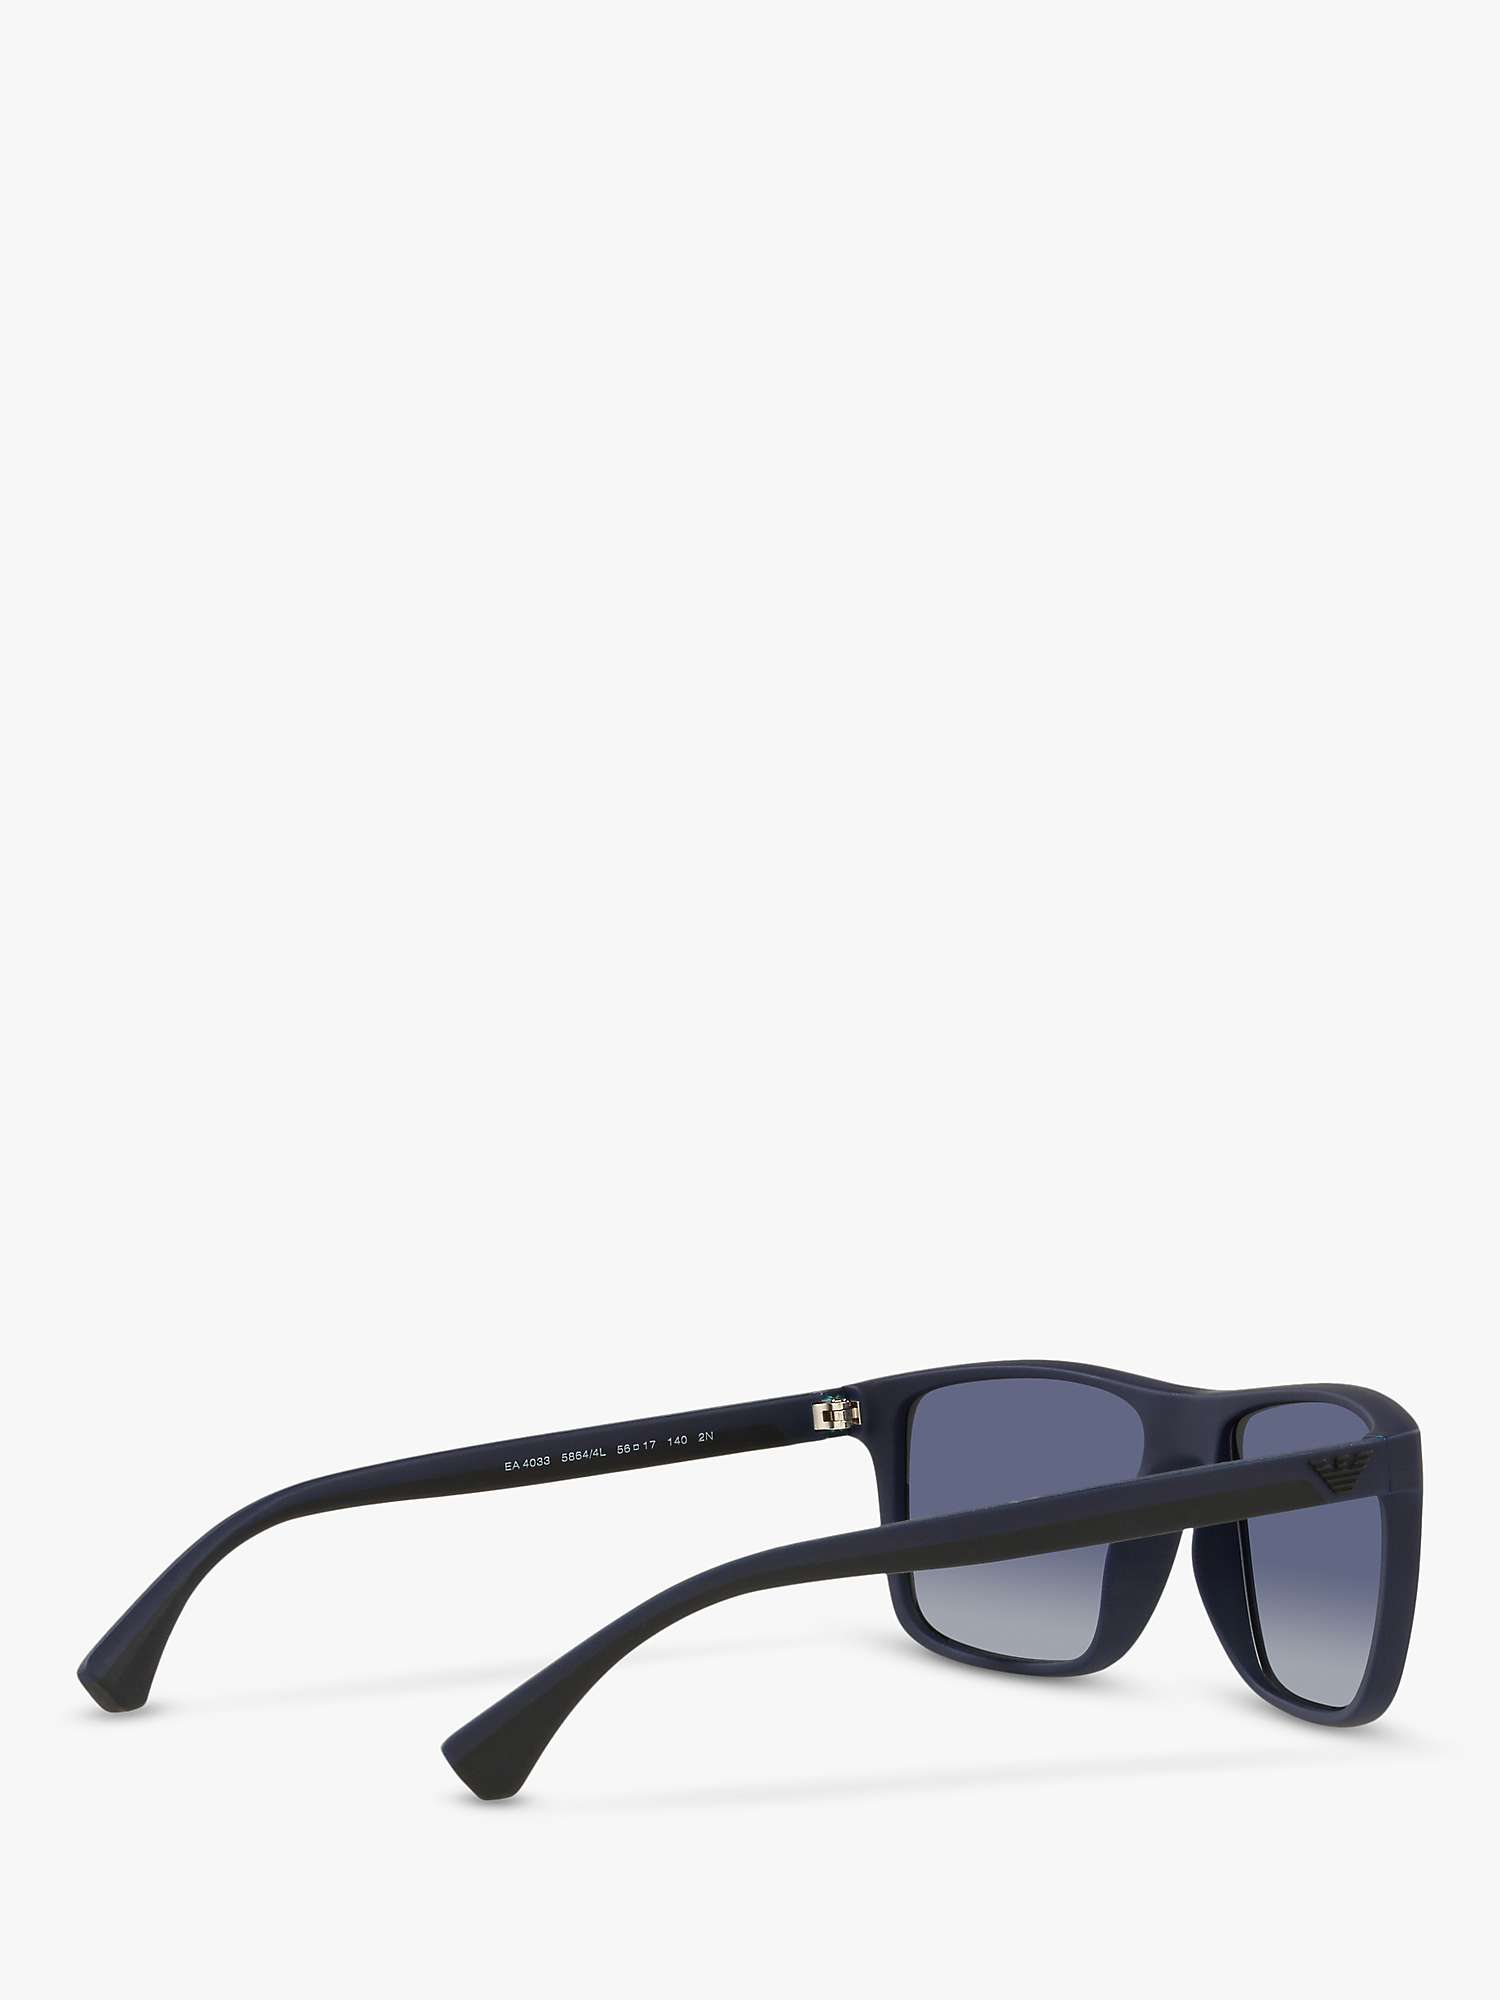 Buy Emporio Armani EA4033 Men's Square Sunglasses, Black/Blue Gradient Online at johnlewis.com